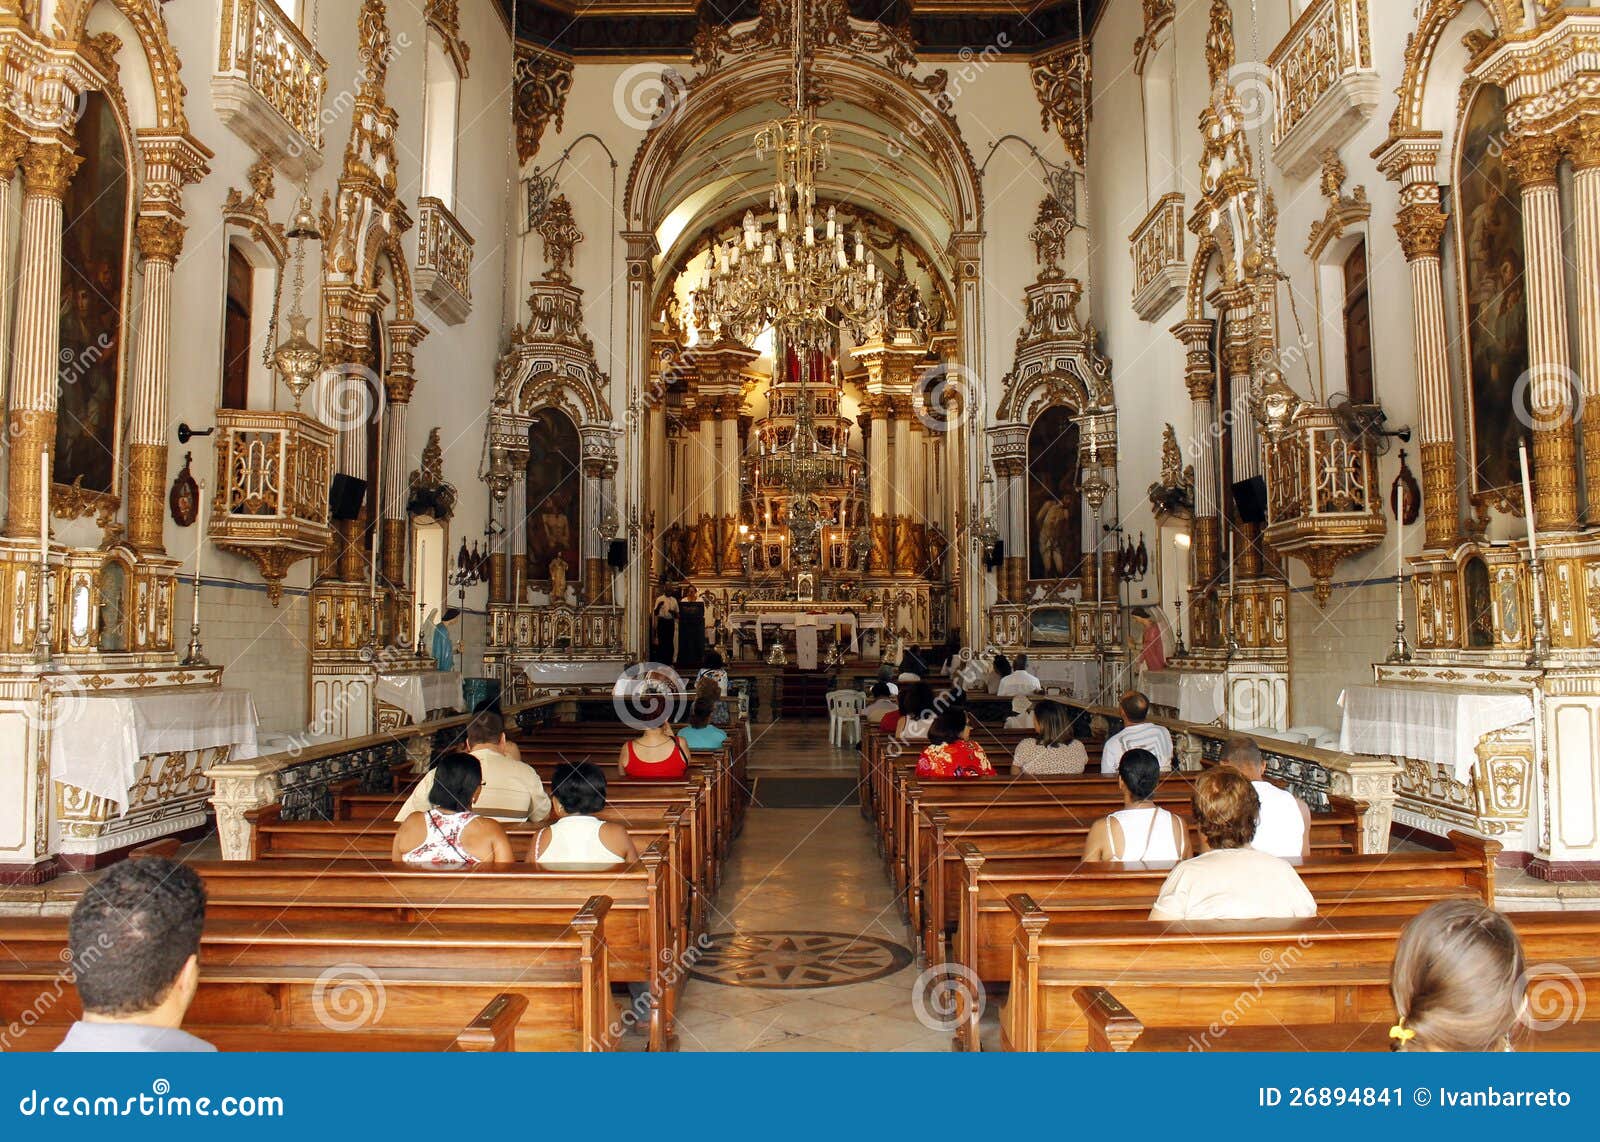 Iglesia de Bonfim - Salvador, Bahía, el Brasil. Foto tomada el 21 de septiembre de 2012.